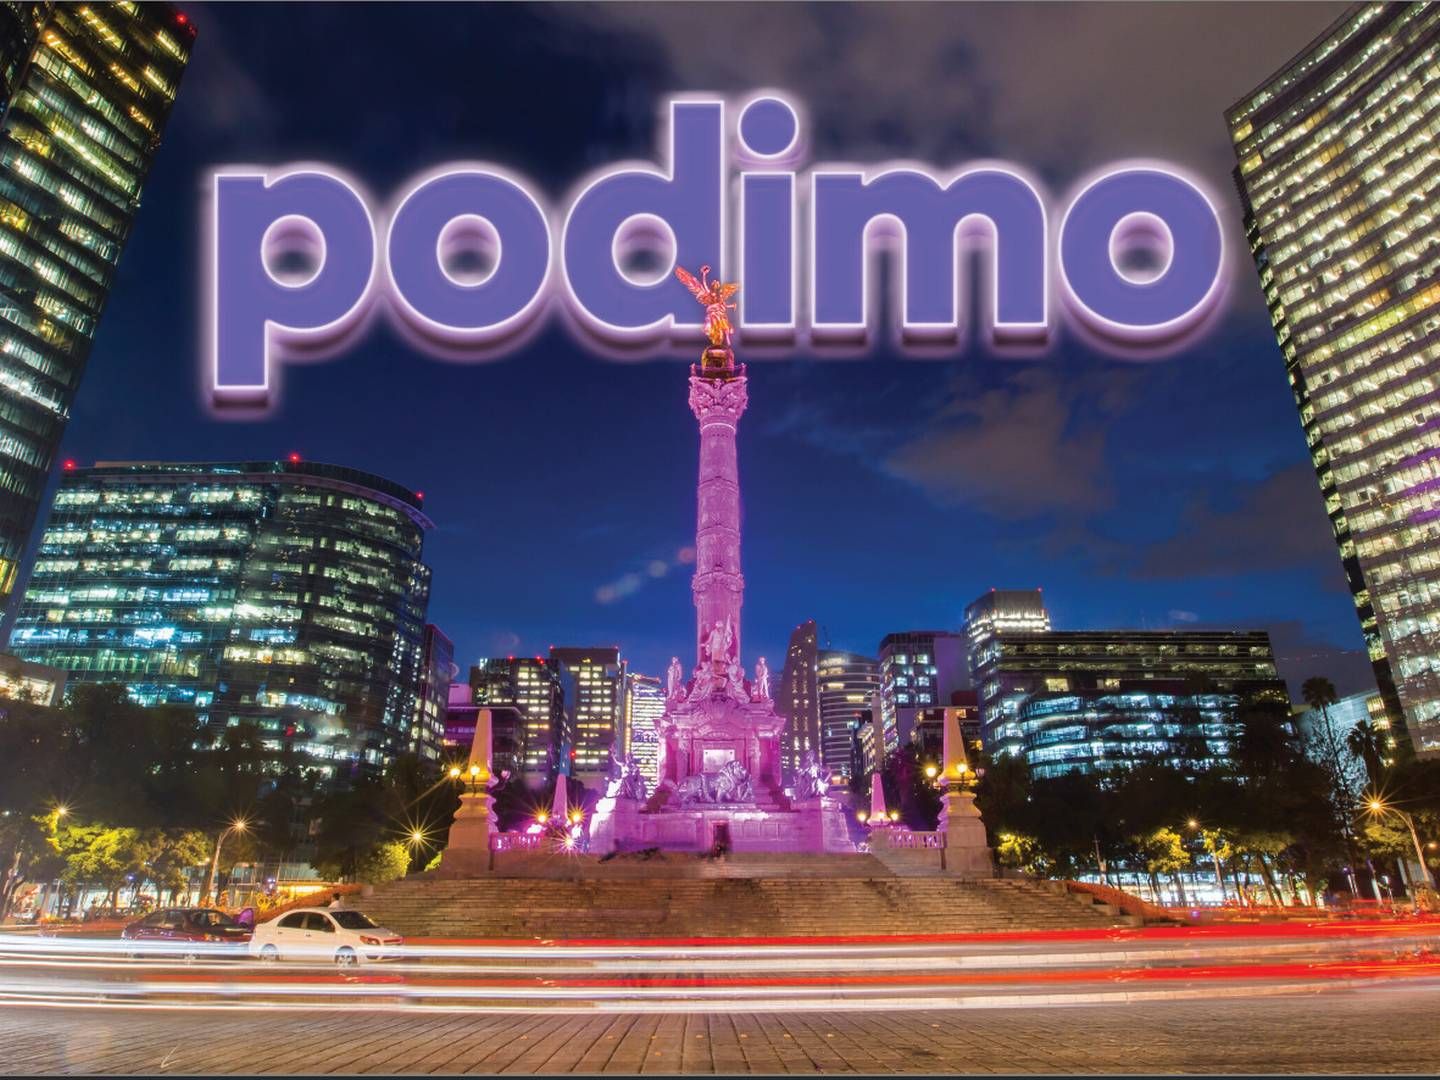 Podimo gjorde indtog i Mexico i marts i år. Den internationale ekspansion er medvirkende til selskabets store underskud i 2022. | Foto: Pr / Podimo